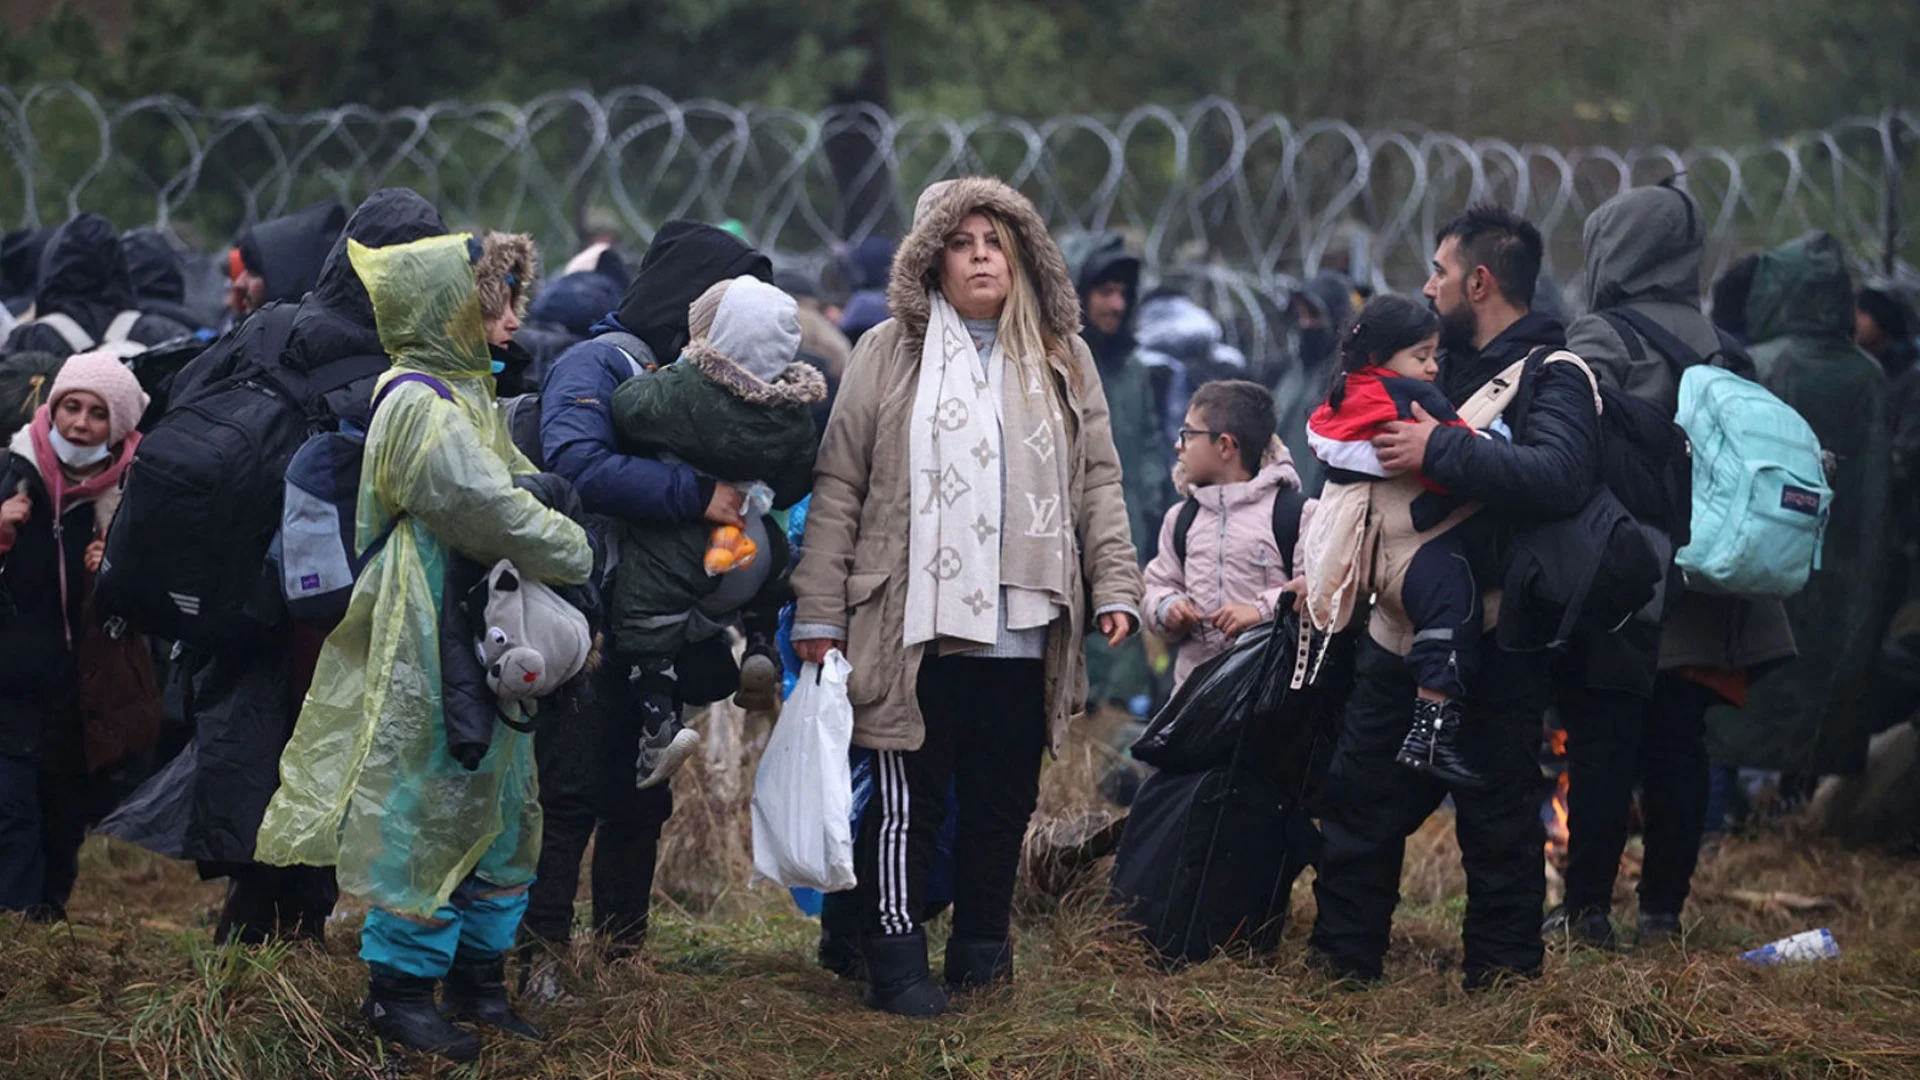 مجموعة من طالبي اللجوء يحاولون عبور الحدود - اللجوء إلى أوربا للمجنسين في تركيا